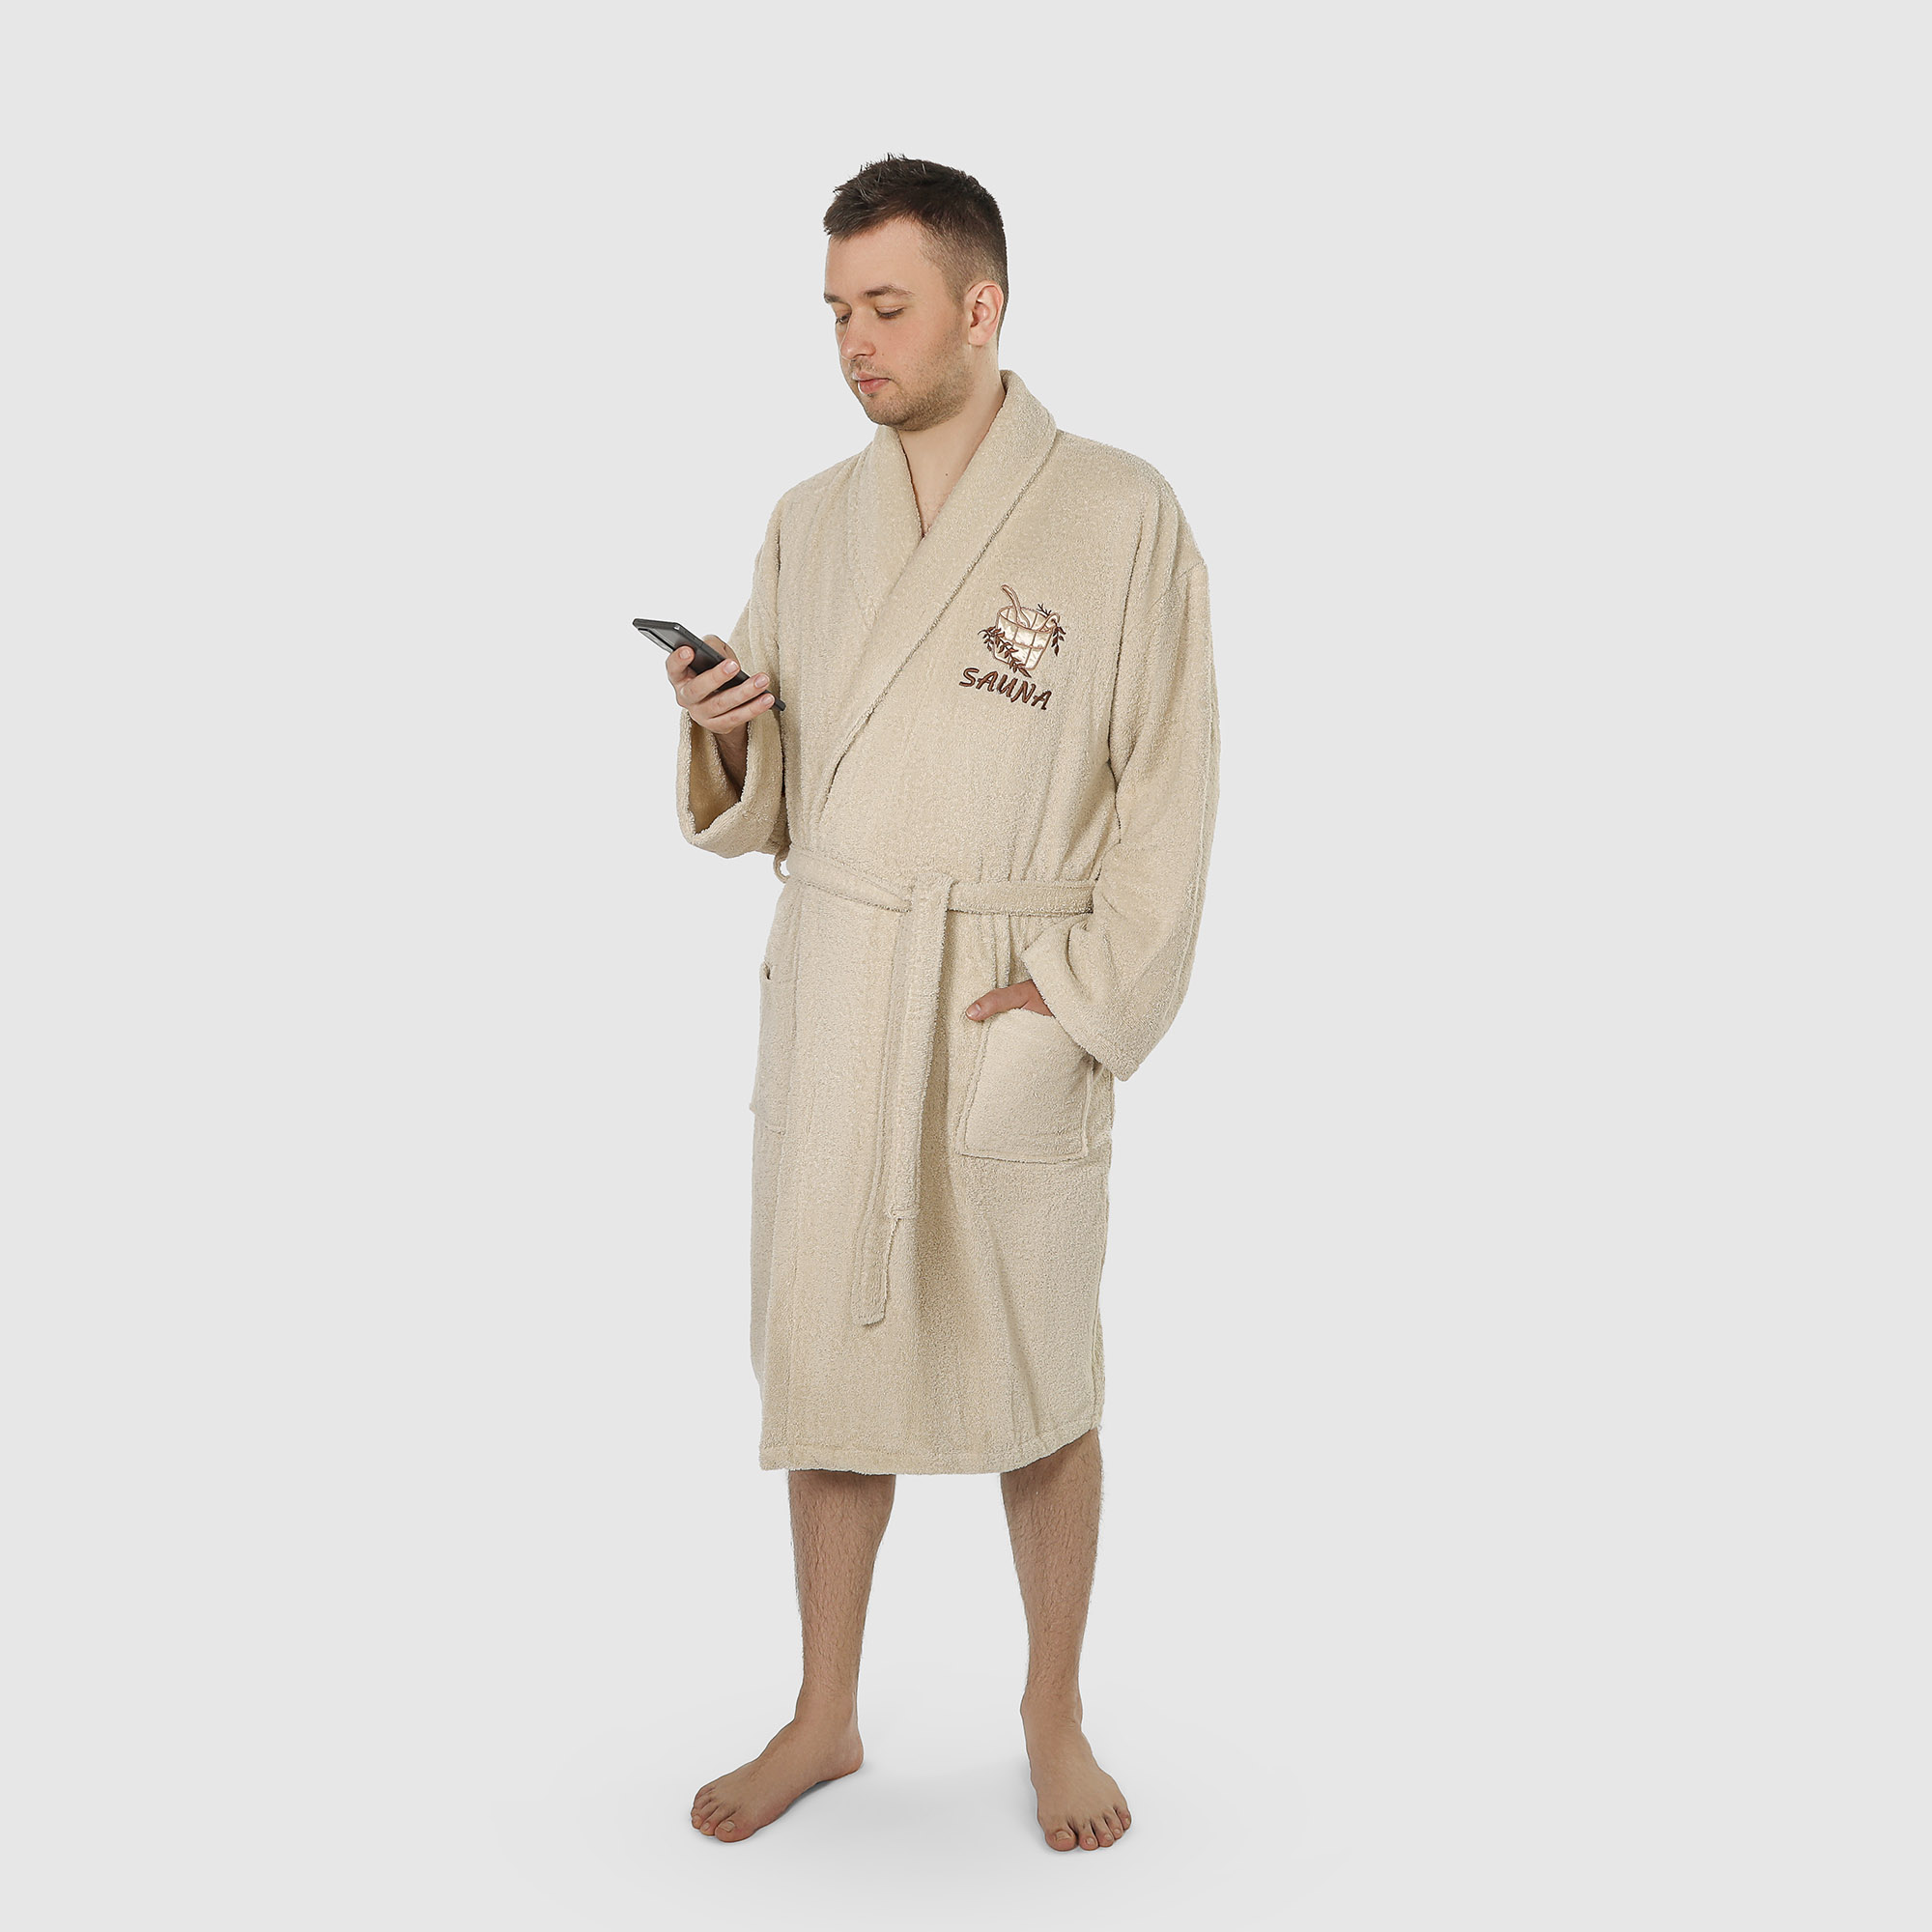 Халат мужской махровый с воротником Asil sauna brown m халат мужской asil sauna kimono brown xl вафельный